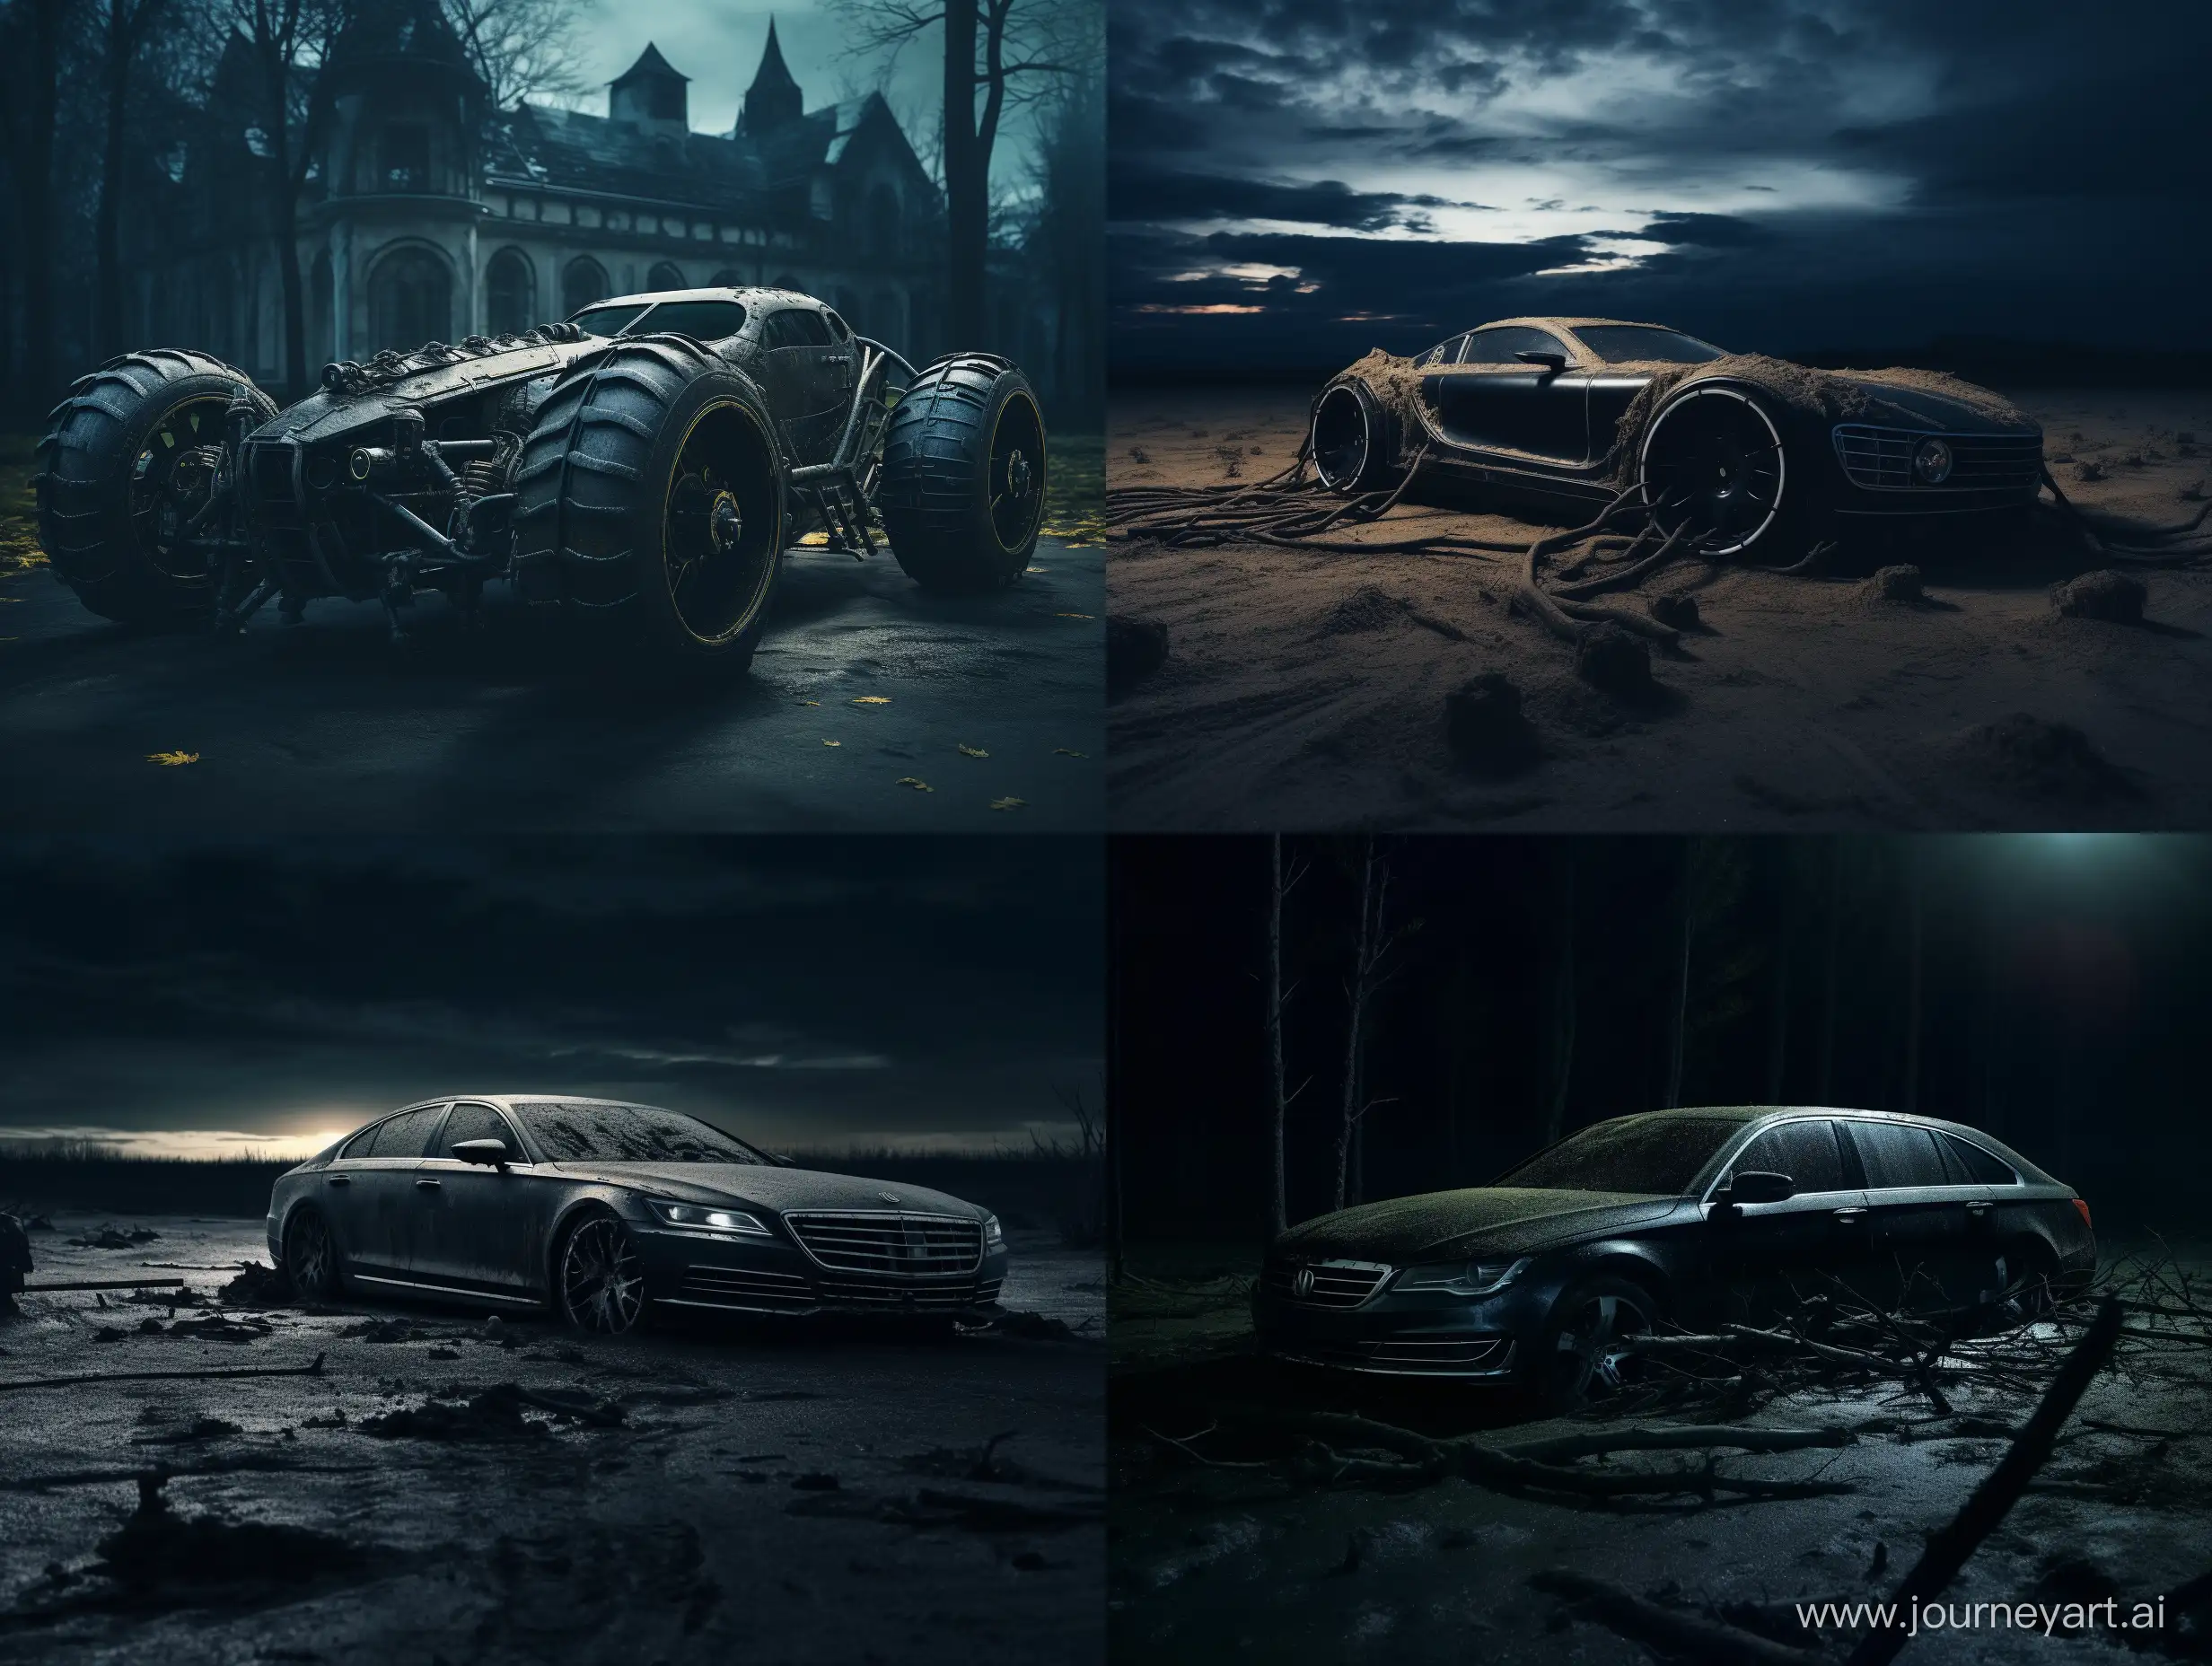 Wheelless-Car-in-Serene-Darkness-Automotive-Elegance